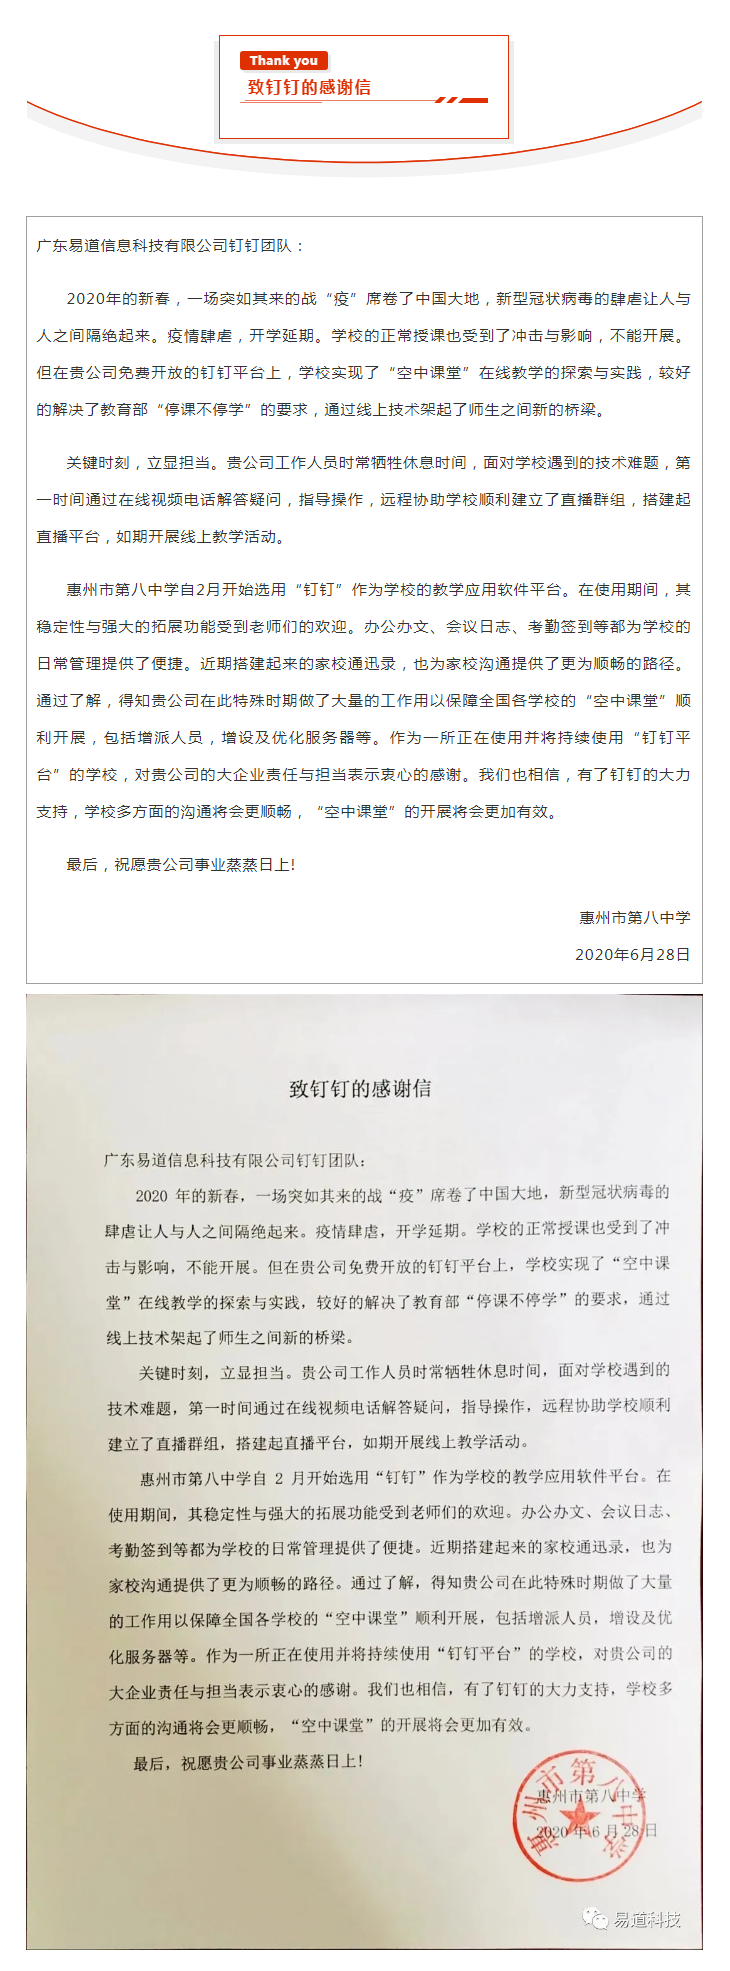 [新消息提醒]惠州八中给广东易道发来了一封感谢信